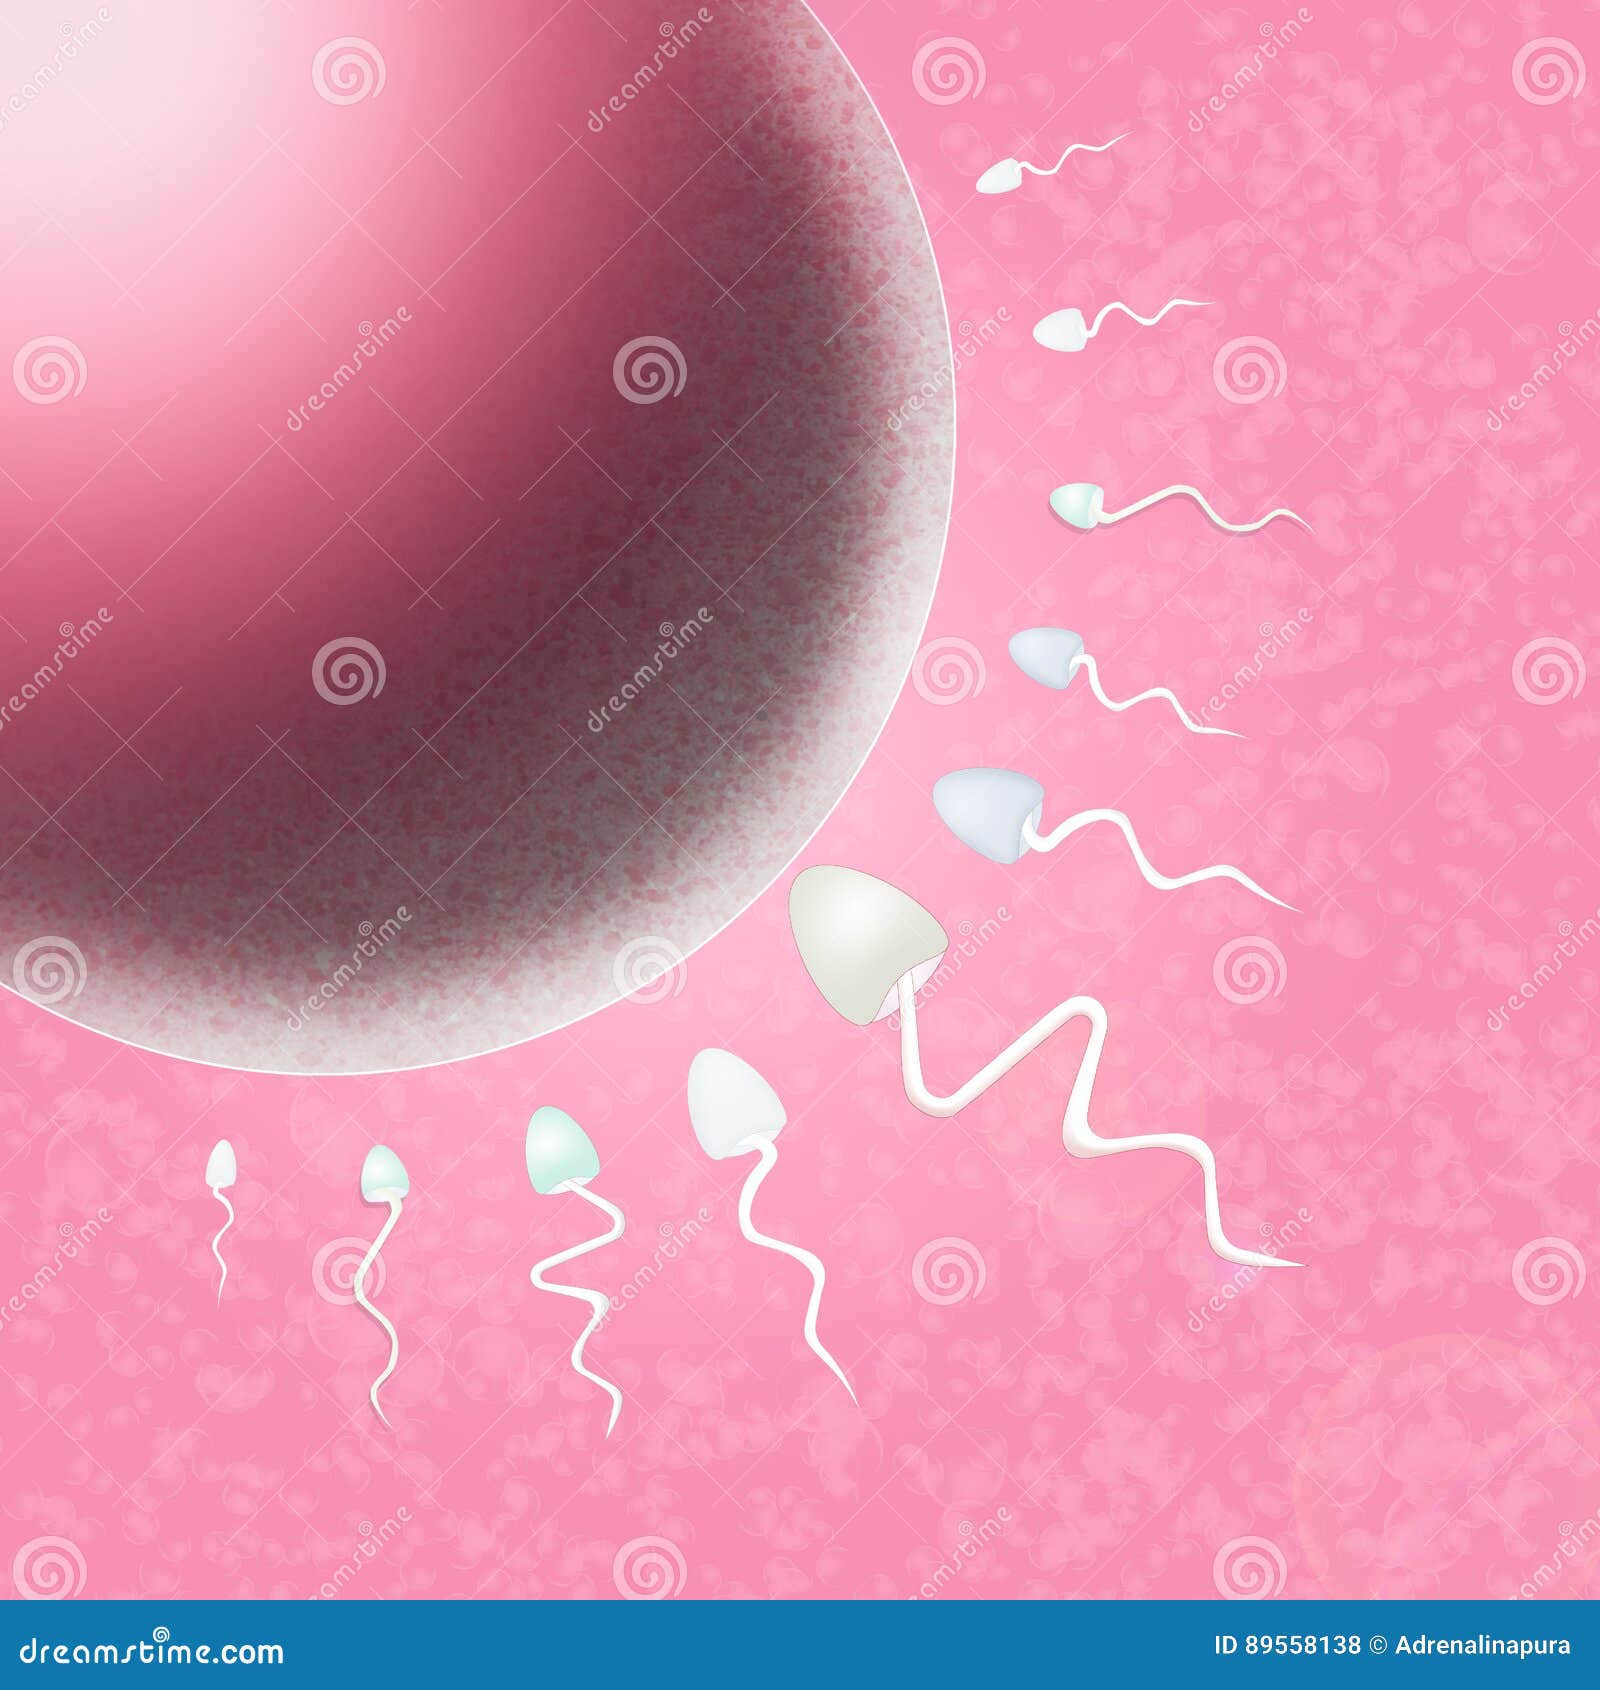 сперма в матке как лечить фото 111